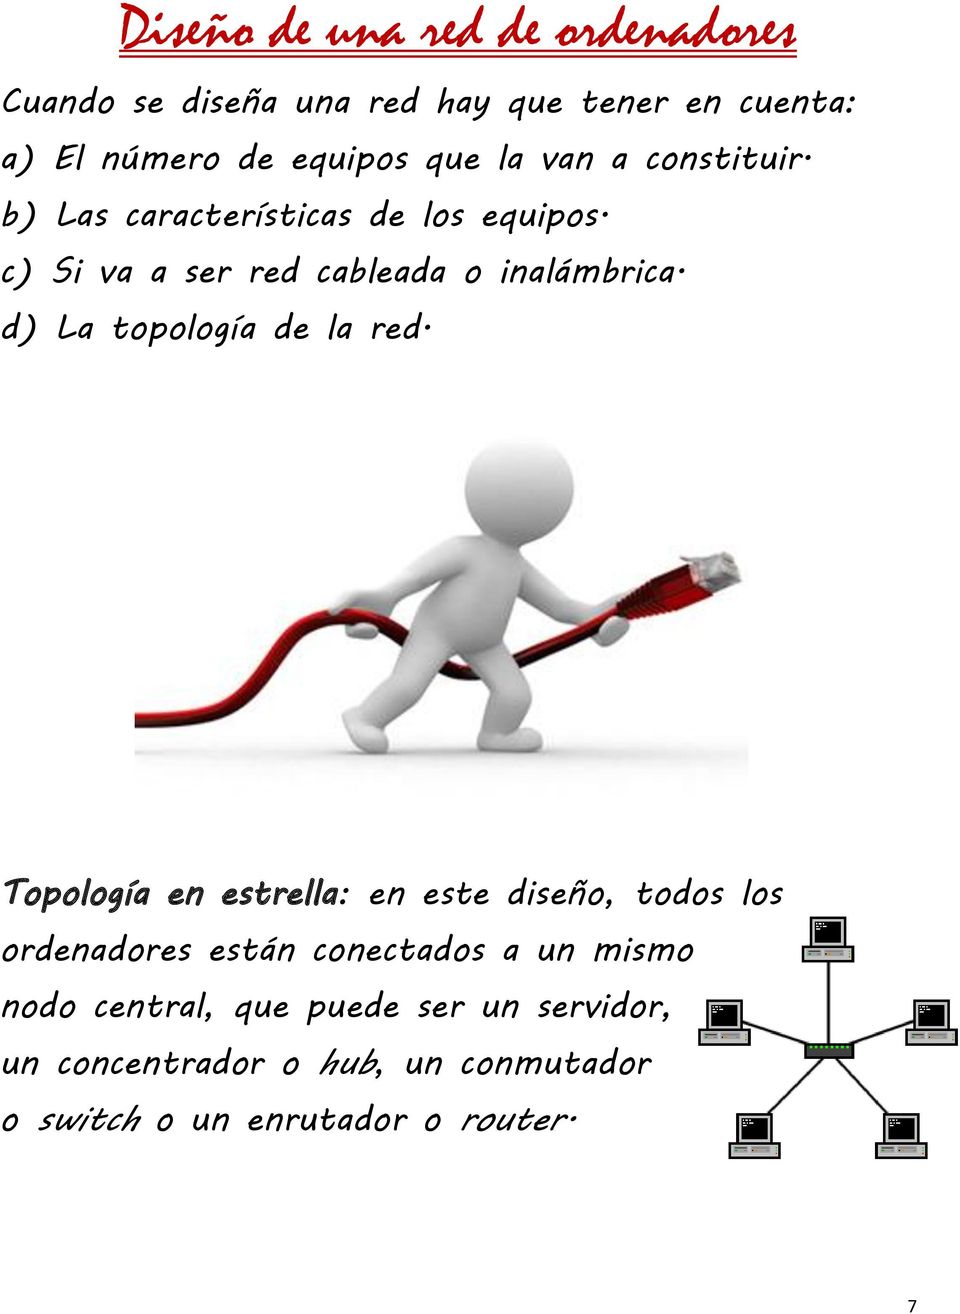 d) La topología de la red.